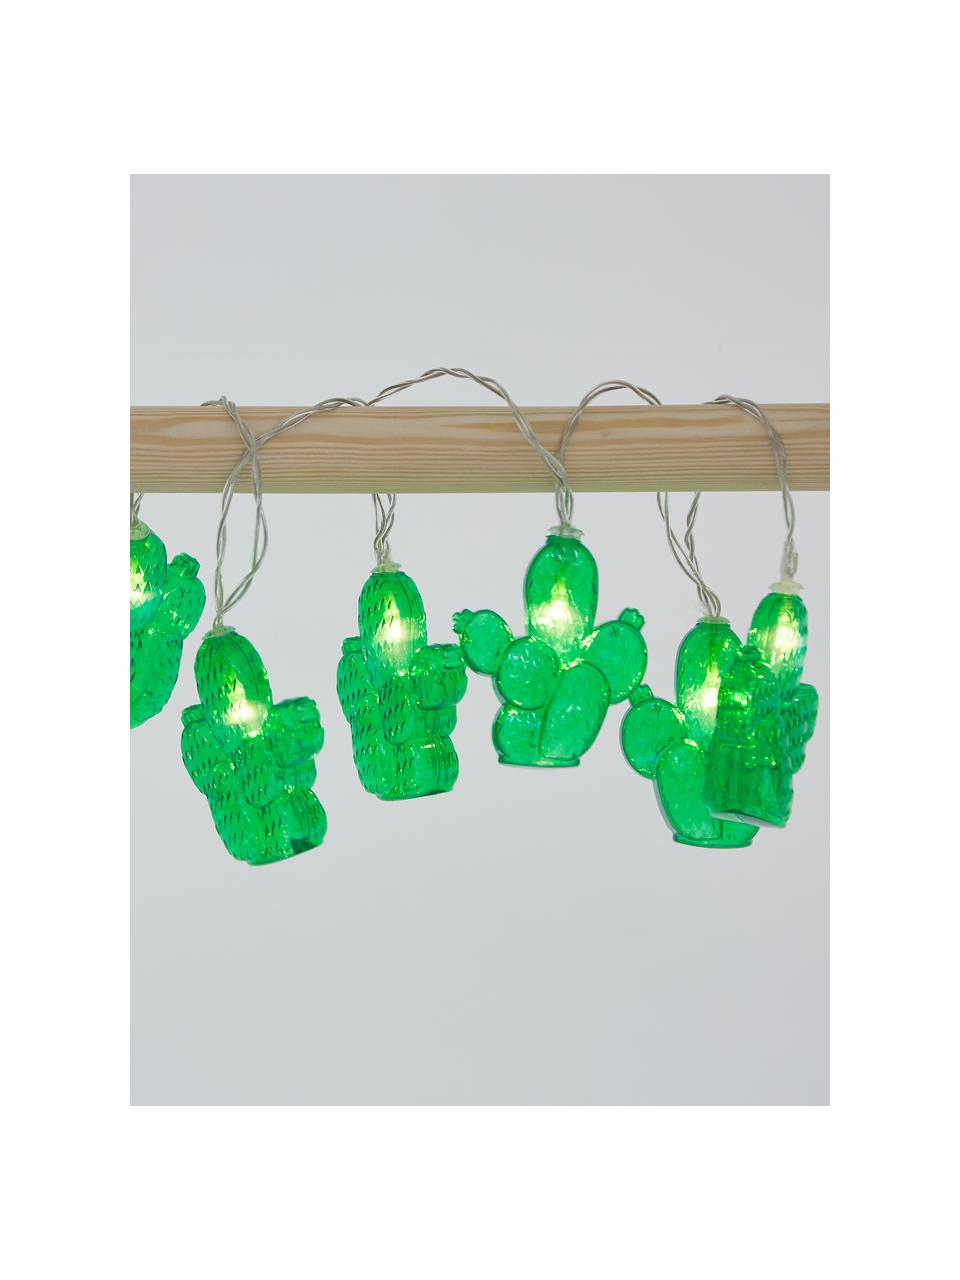 Girlanda świetlna z lampkami LED Desert, Tworzywo sztuczne, Zielony, D 135 cm